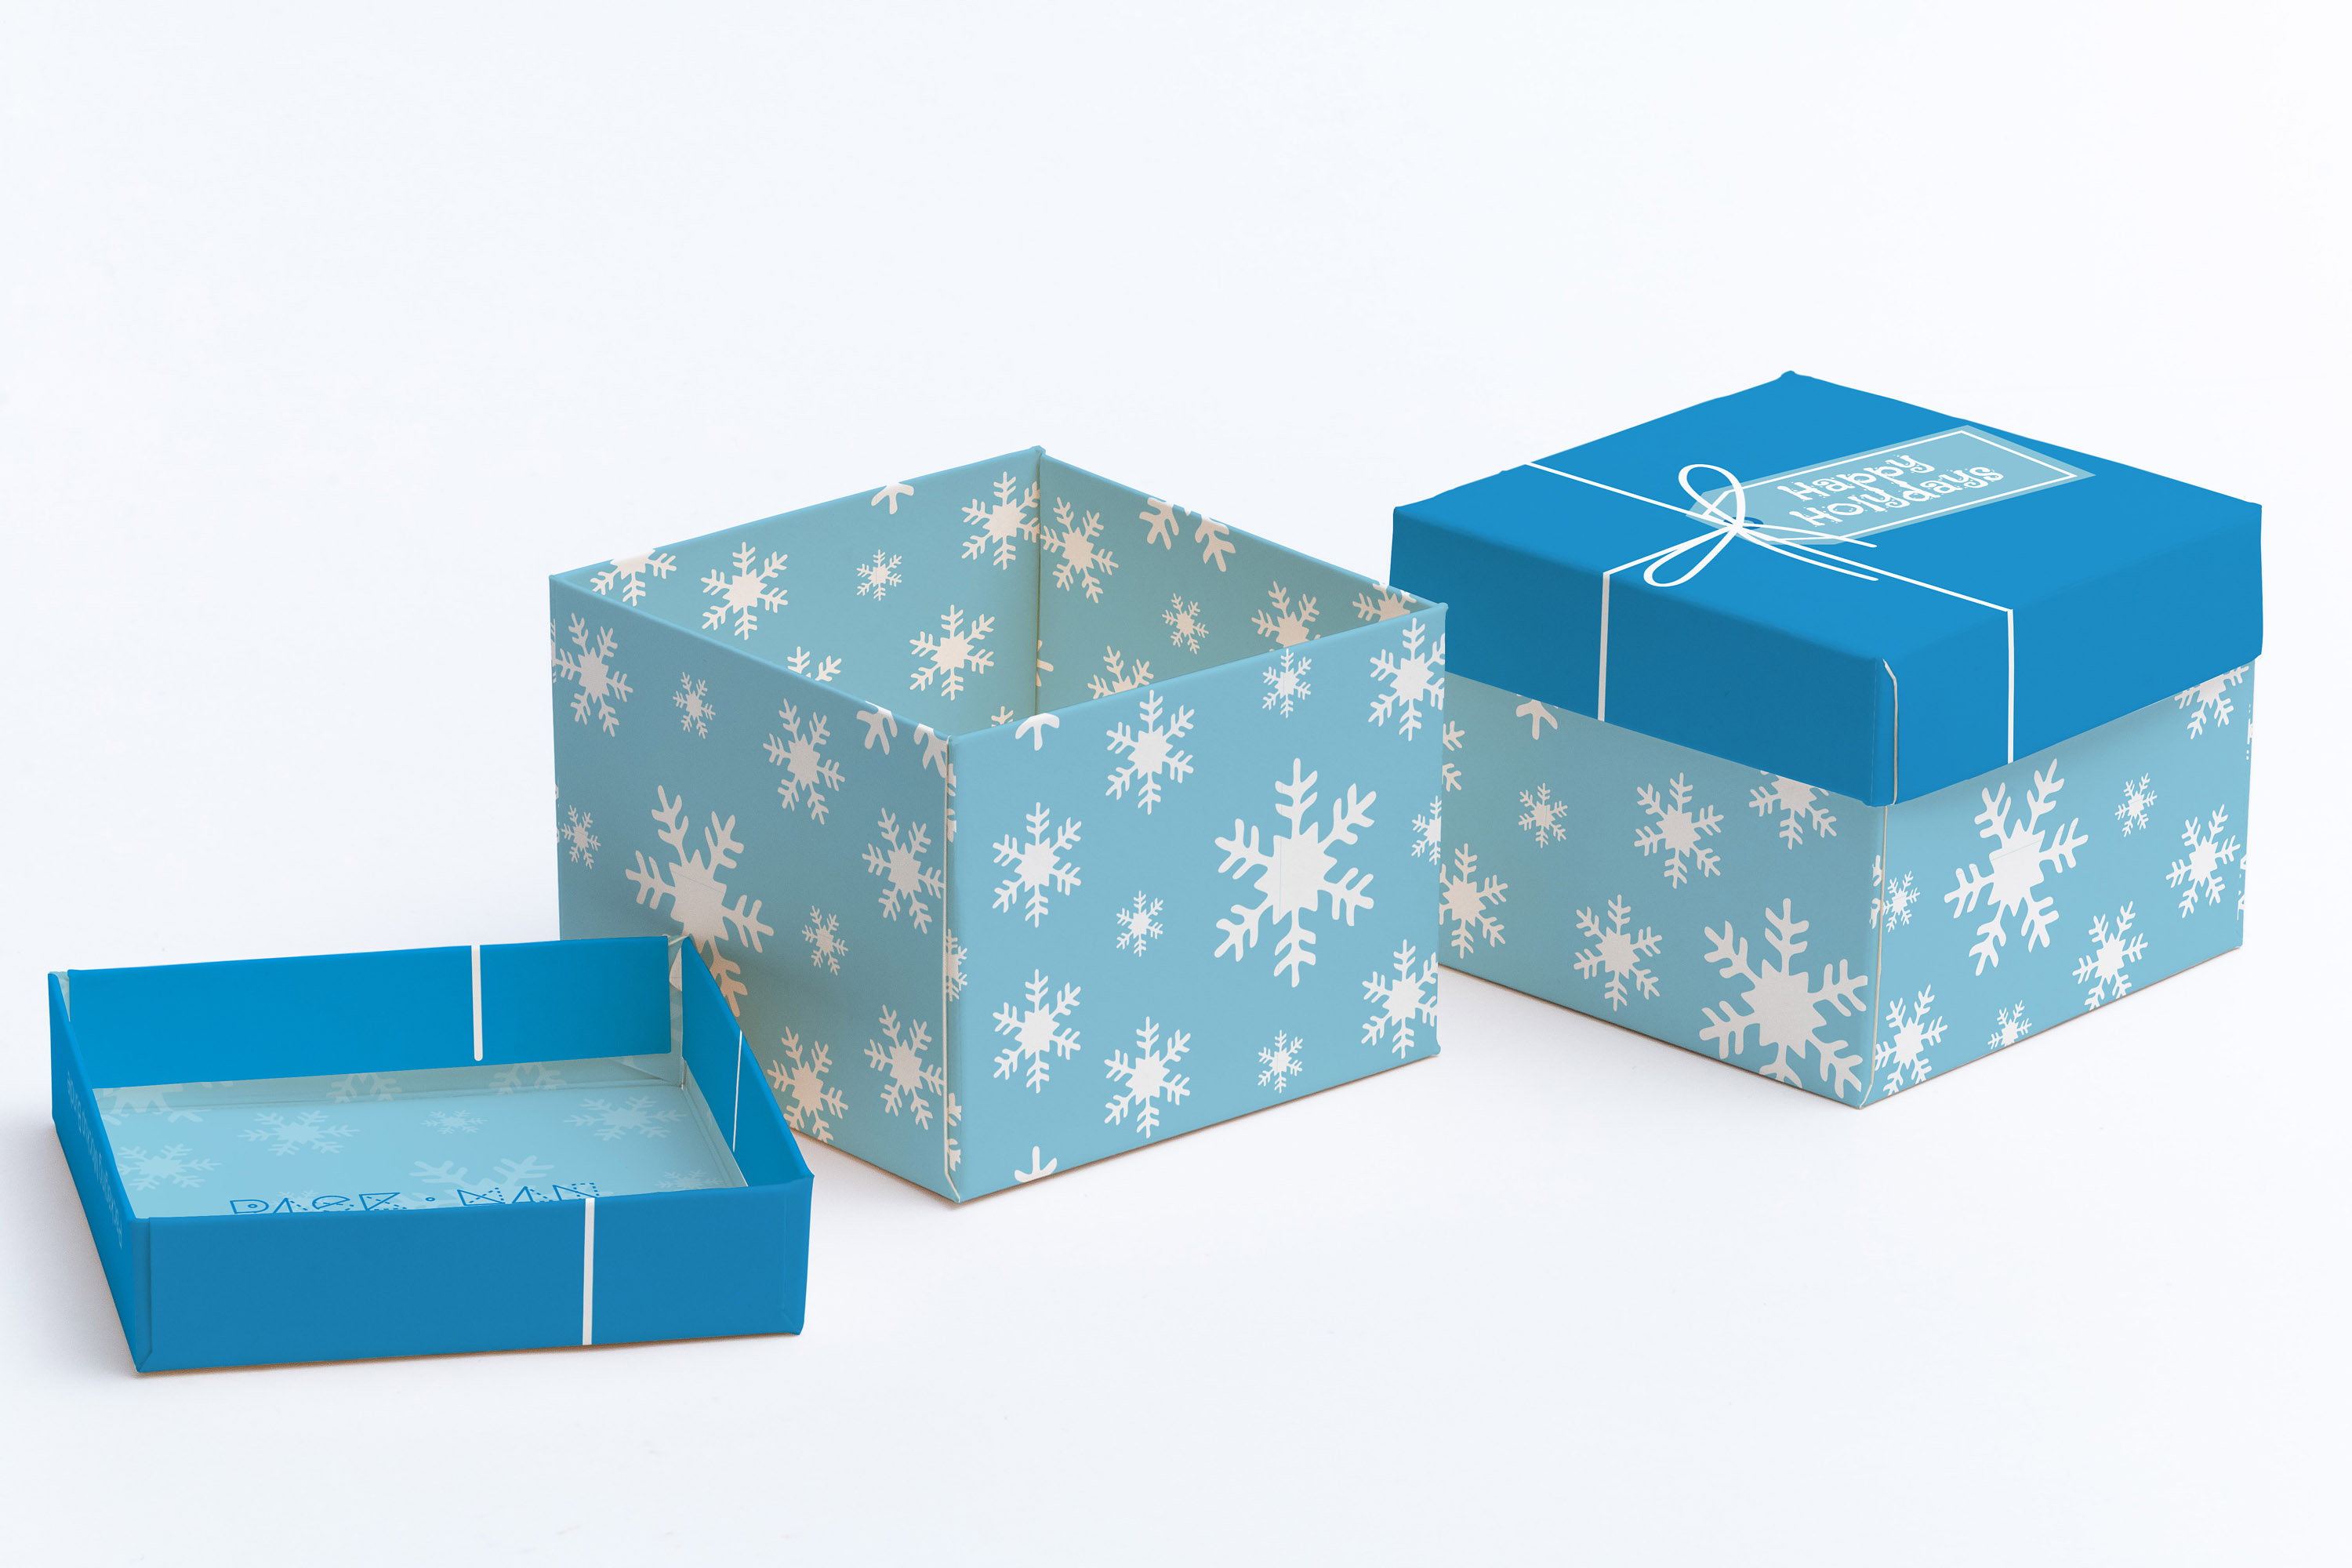 立方体礼品盒包装设计样机模板02 Cube Gift Box Mockup 02插图(1)